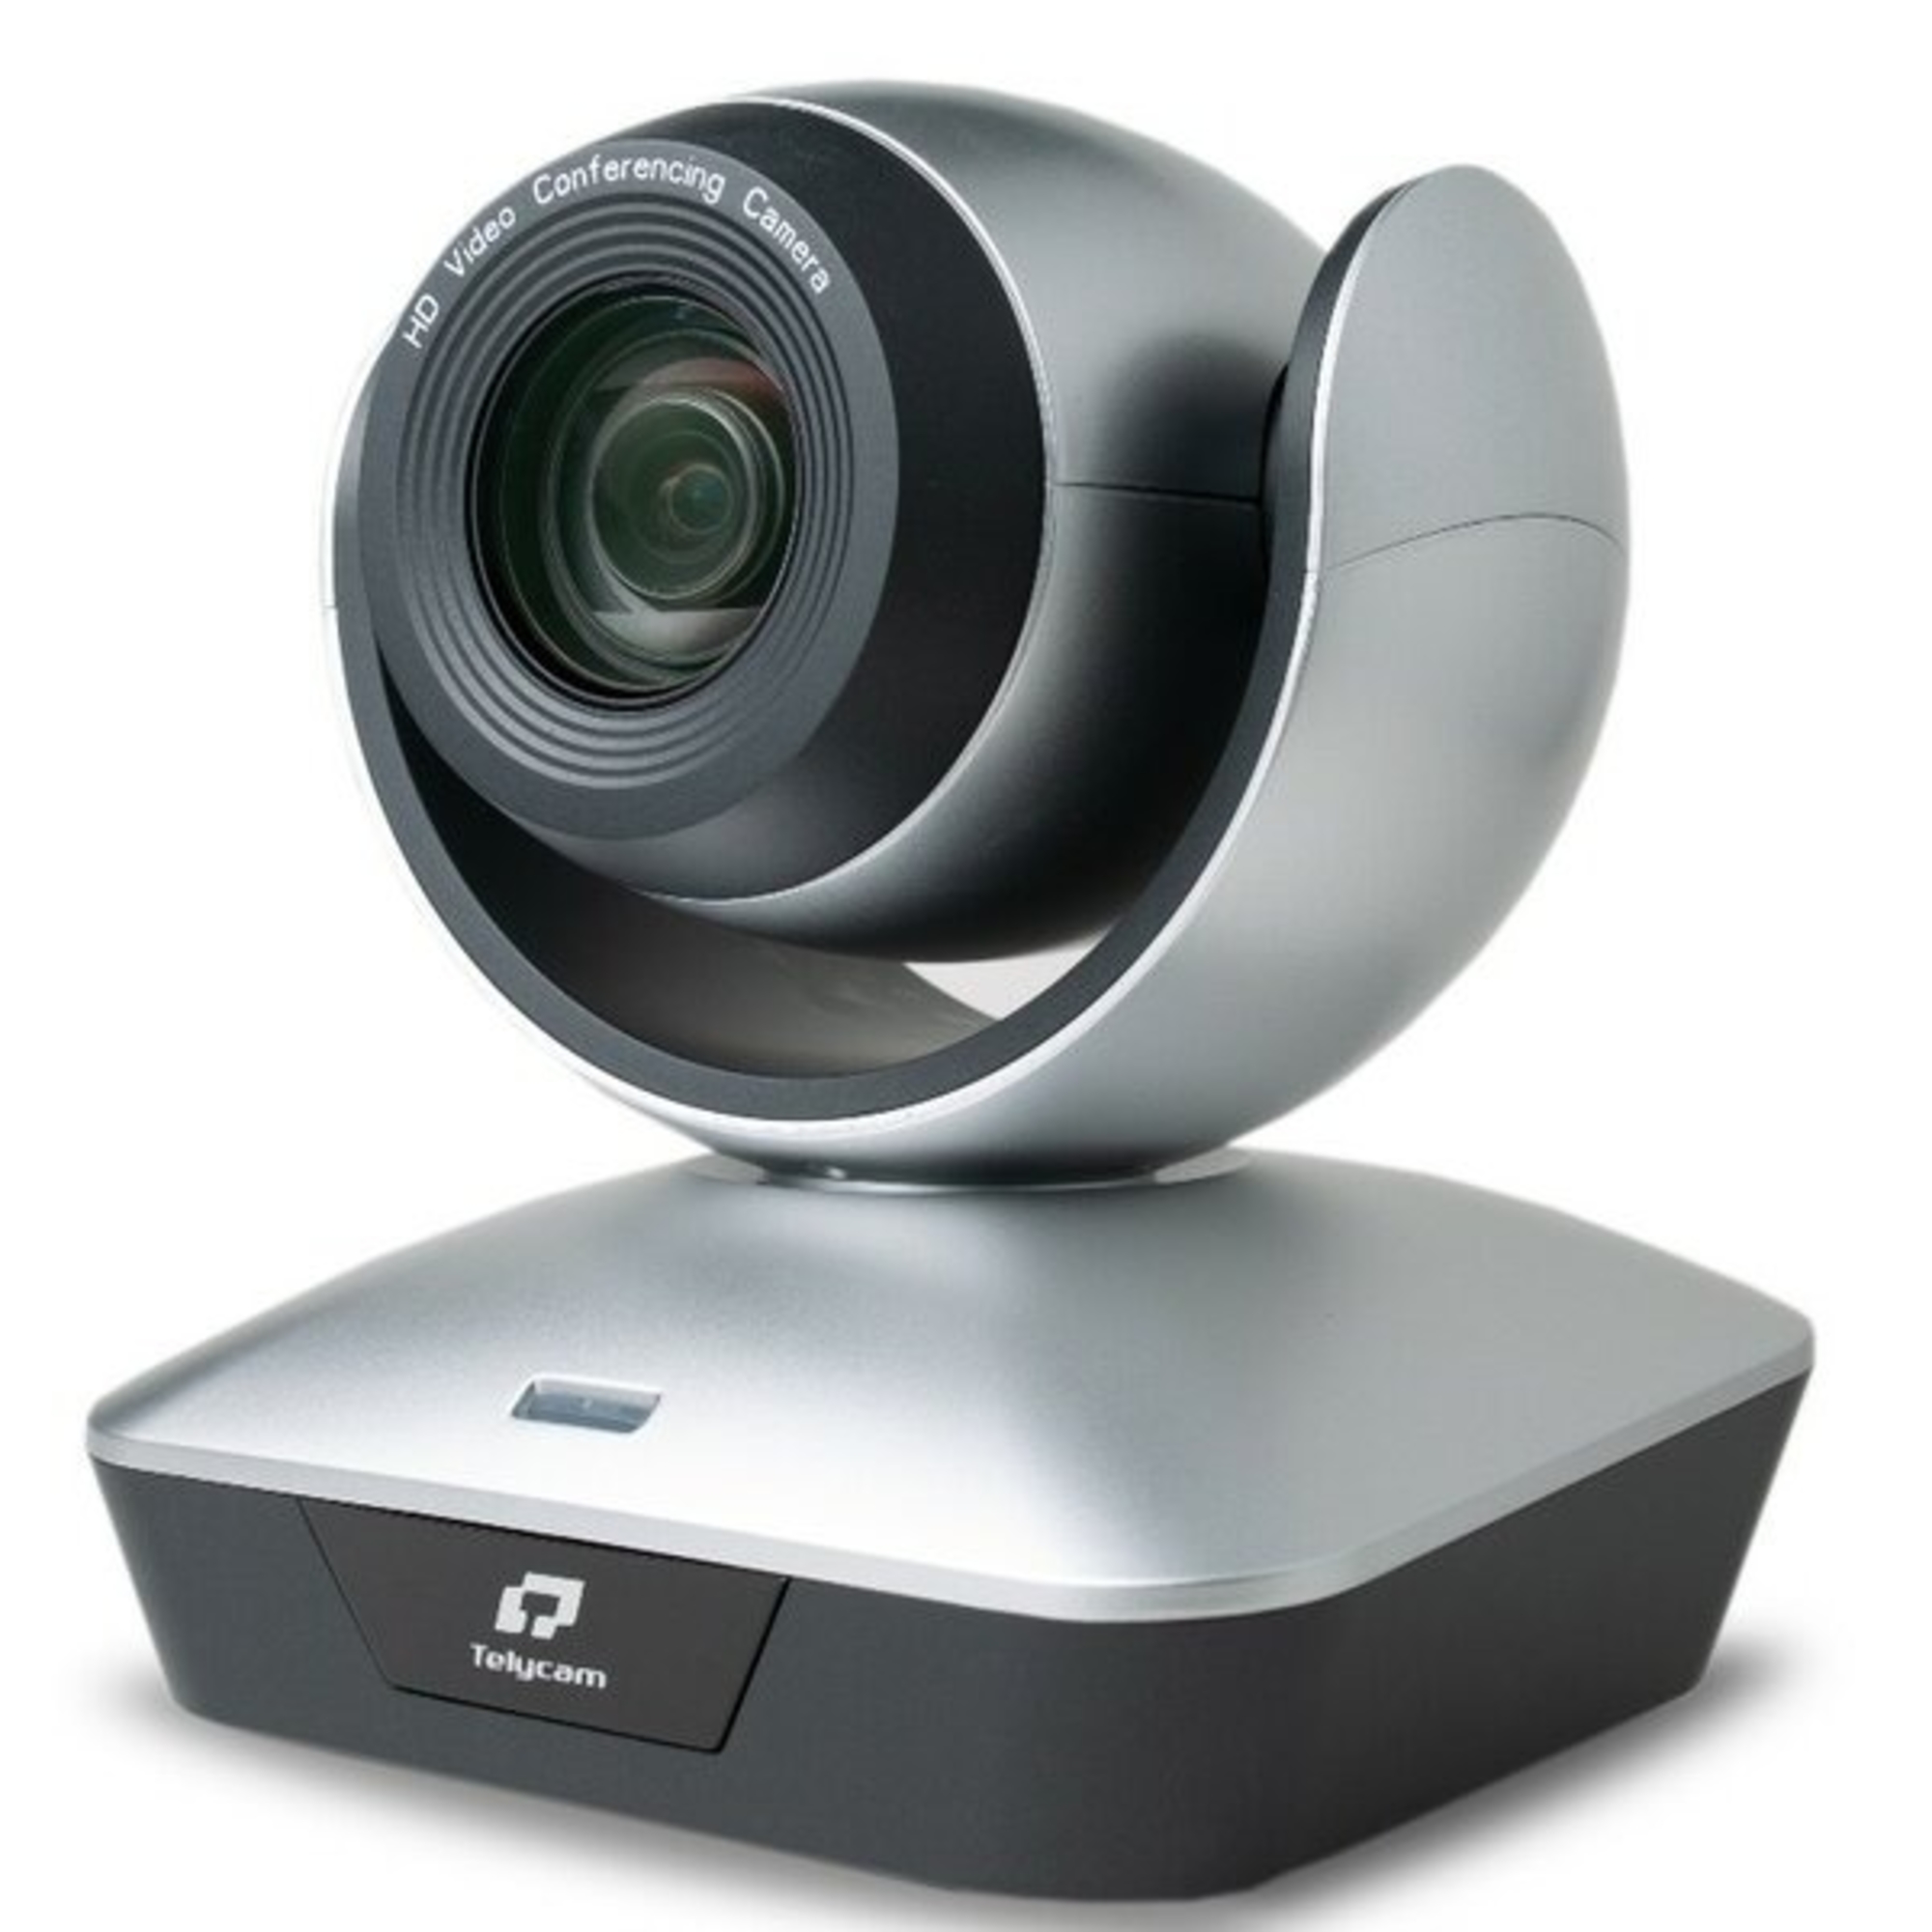 Аксессуары для конференц систем Telycam TLC-1000-U3-5 конференц камера 1080p hd с вращением на 350 градусов с адаптером питания дистанционного управления